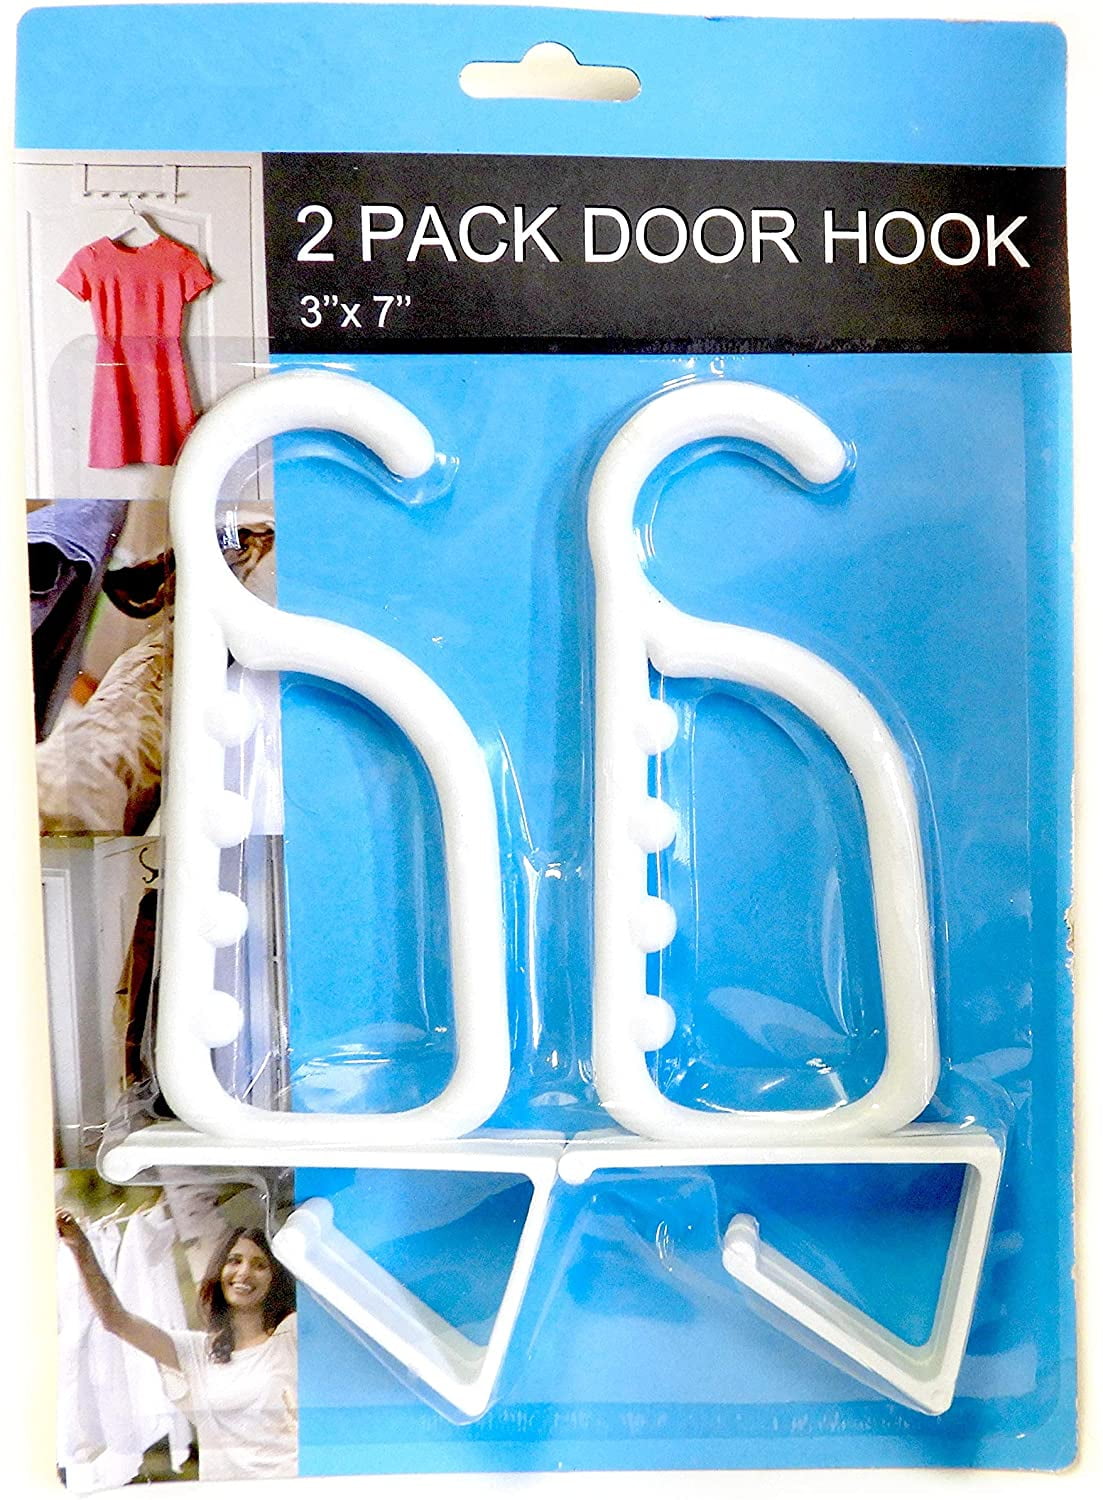 9 Laundry Over The Door Hook 2 Pack